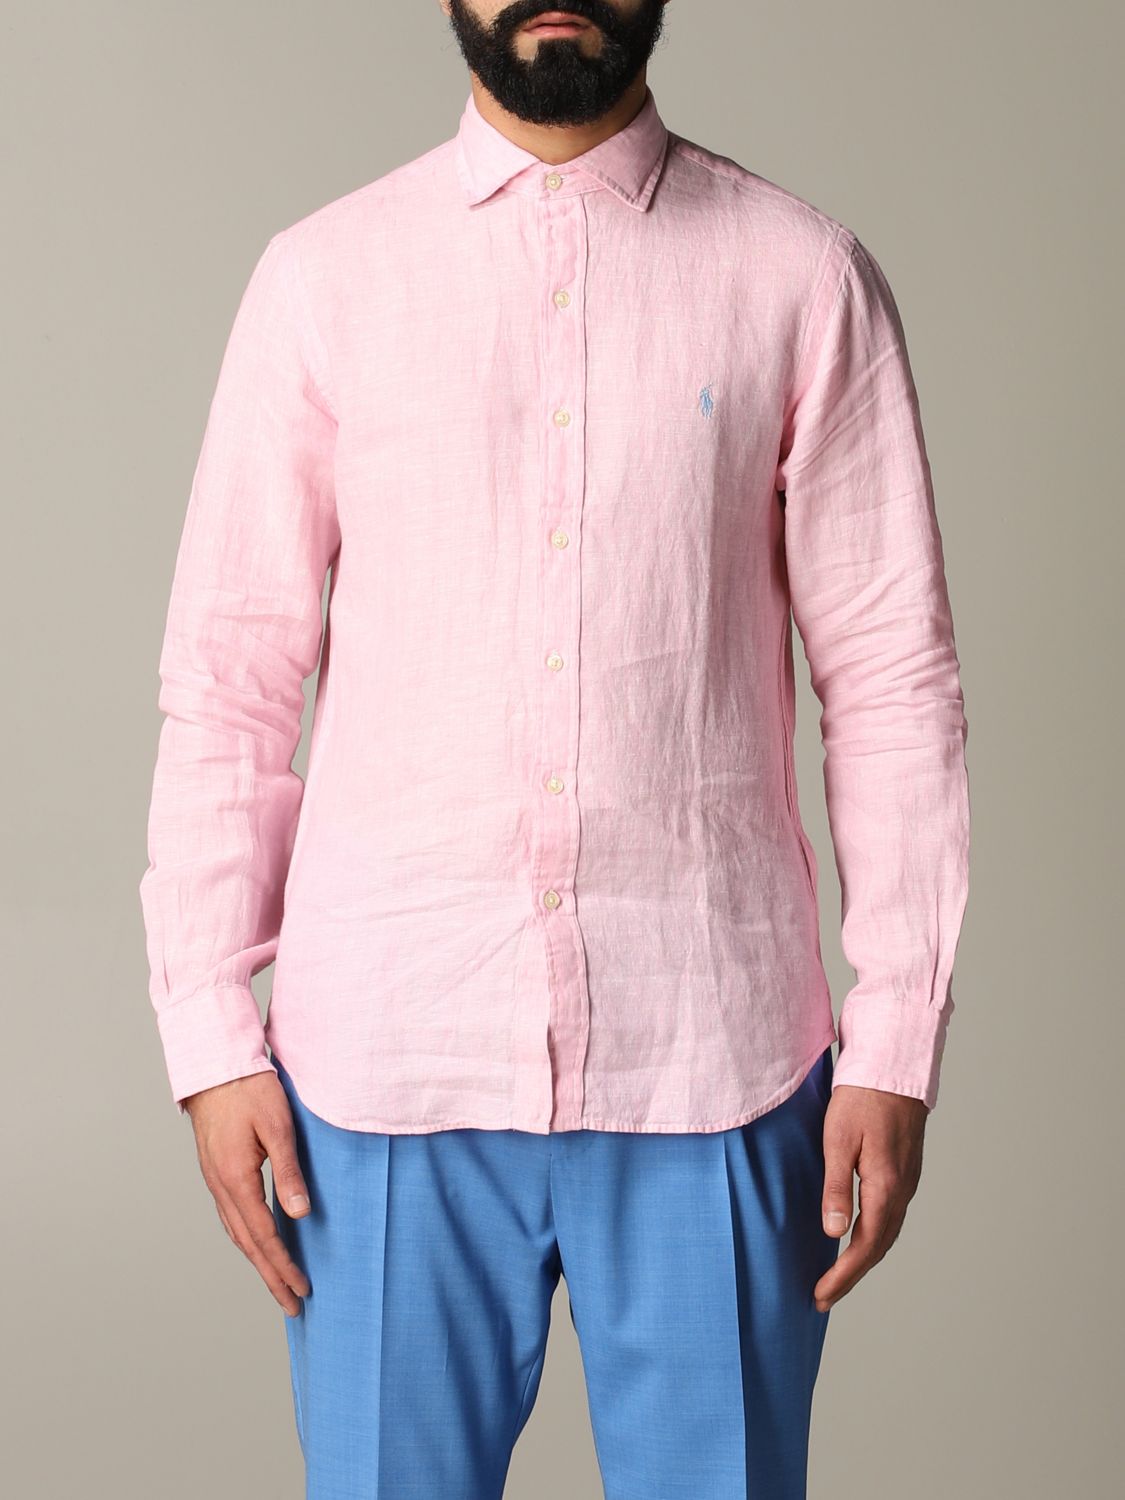 Shirt Polo Ralph Lauren: Polo Ralph Lauren shirt for men pink 1